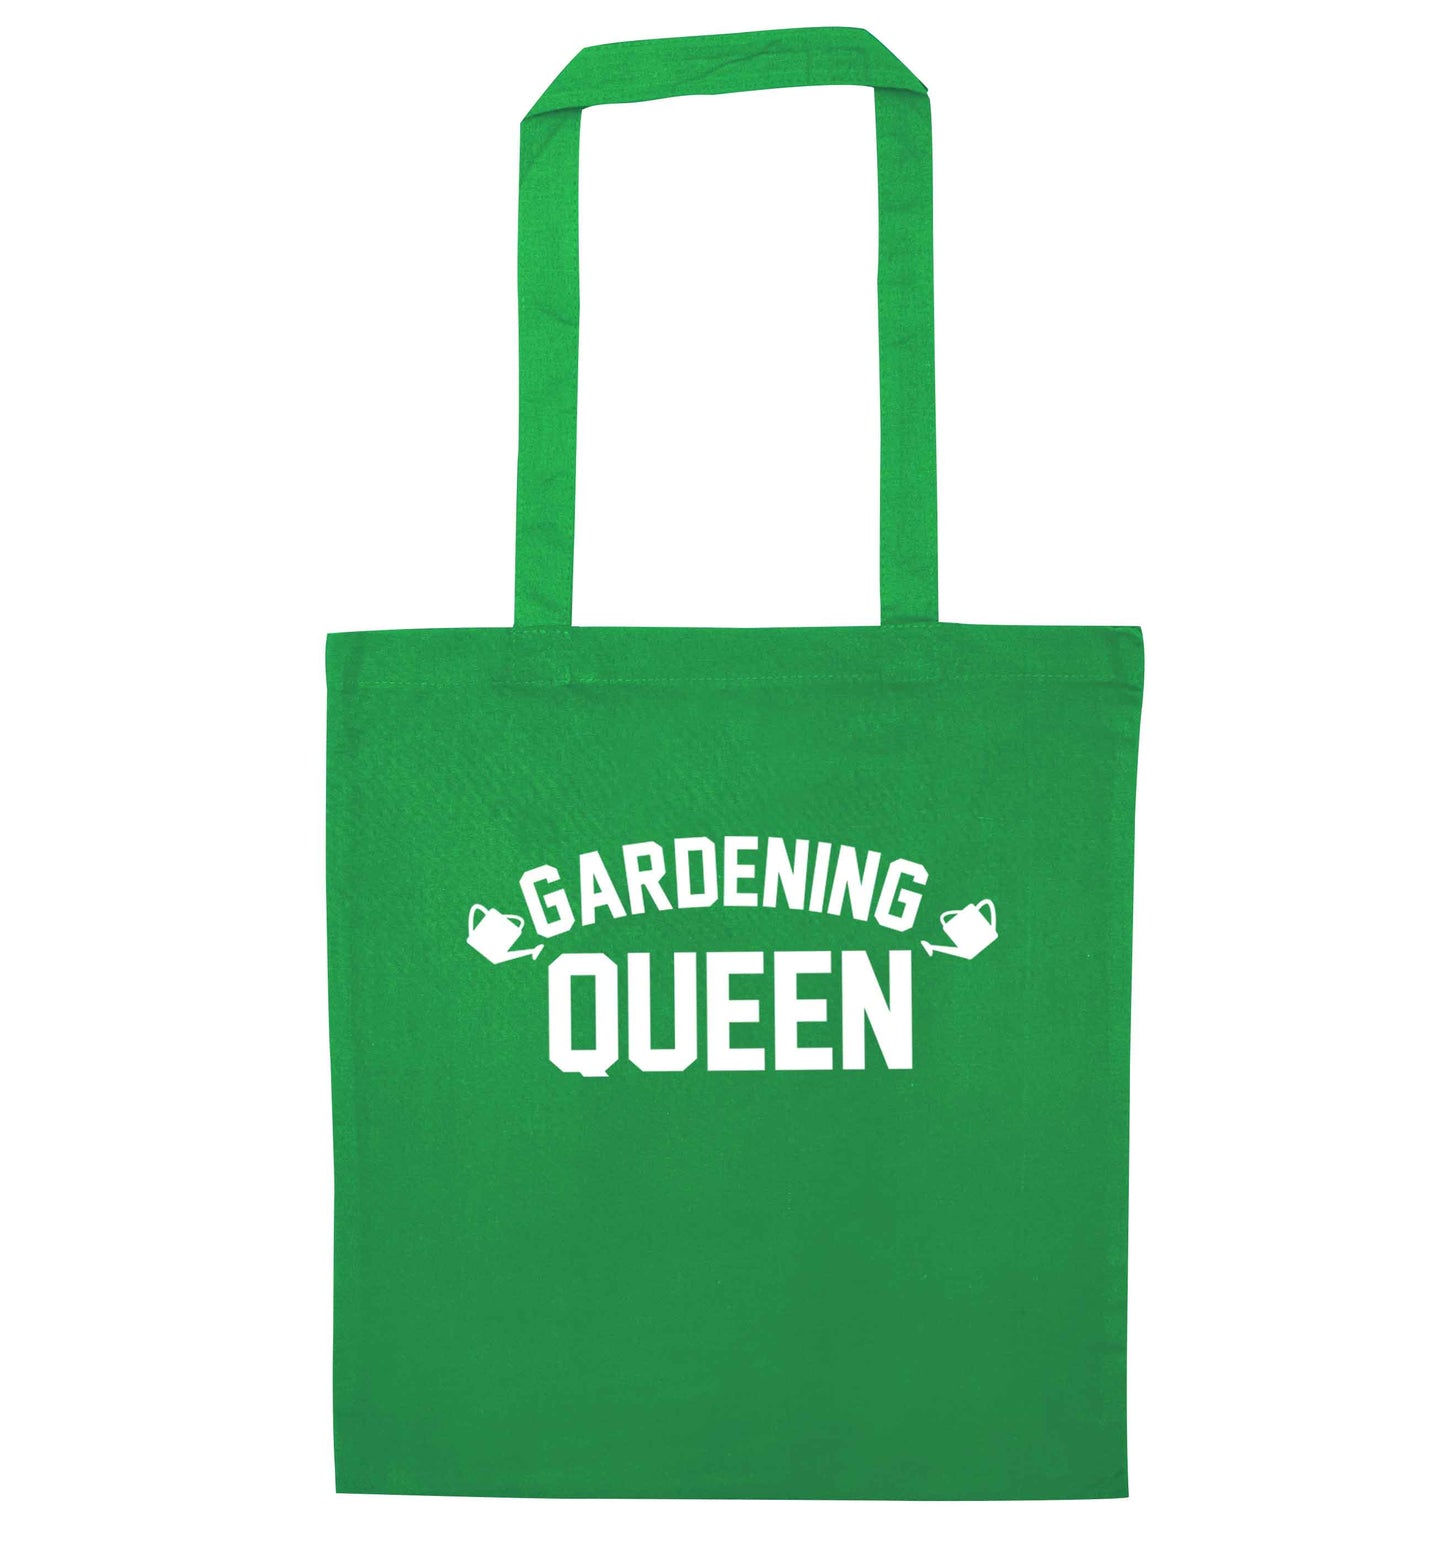 Gardening queen green tote bag